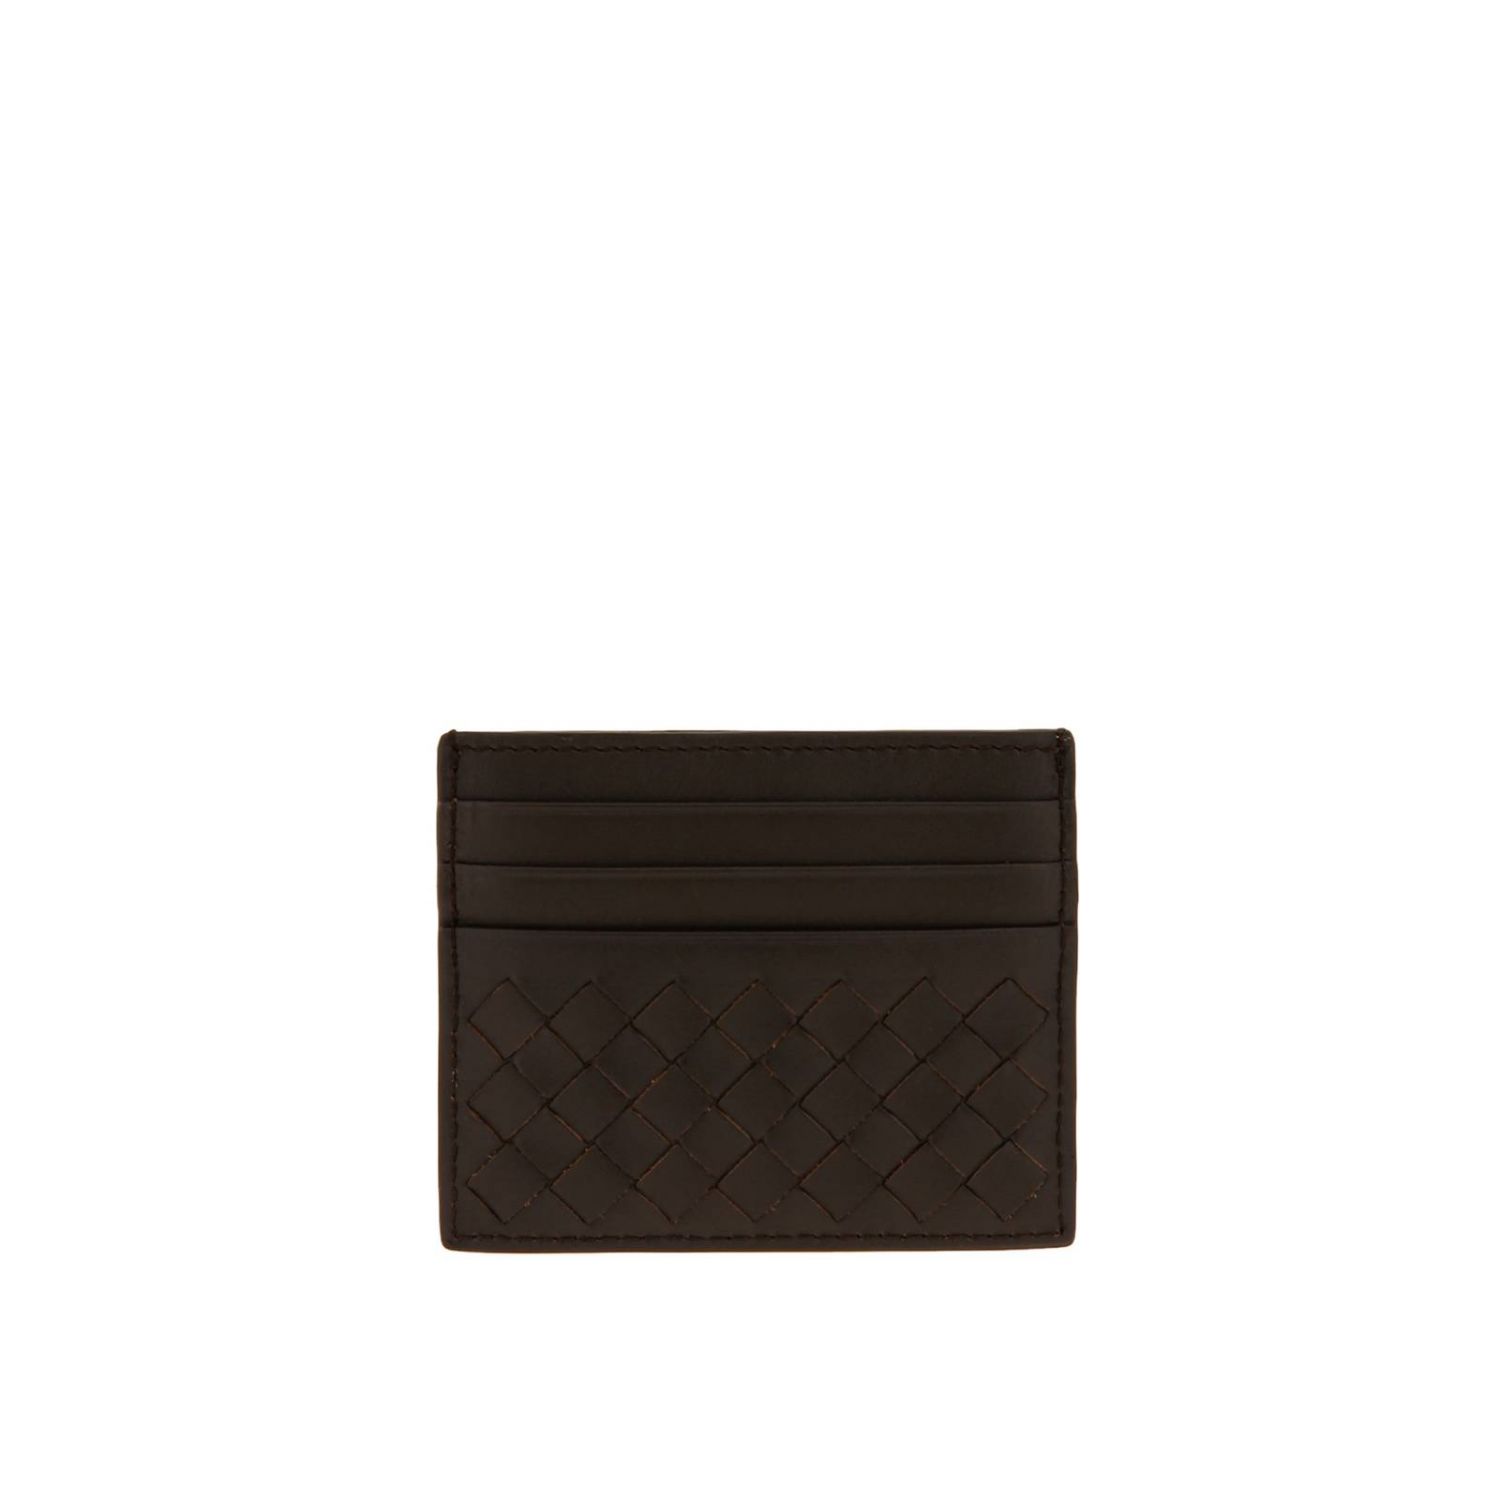 Bottega Veneta Outlet: credit card holder in woven leather | Wallet ...